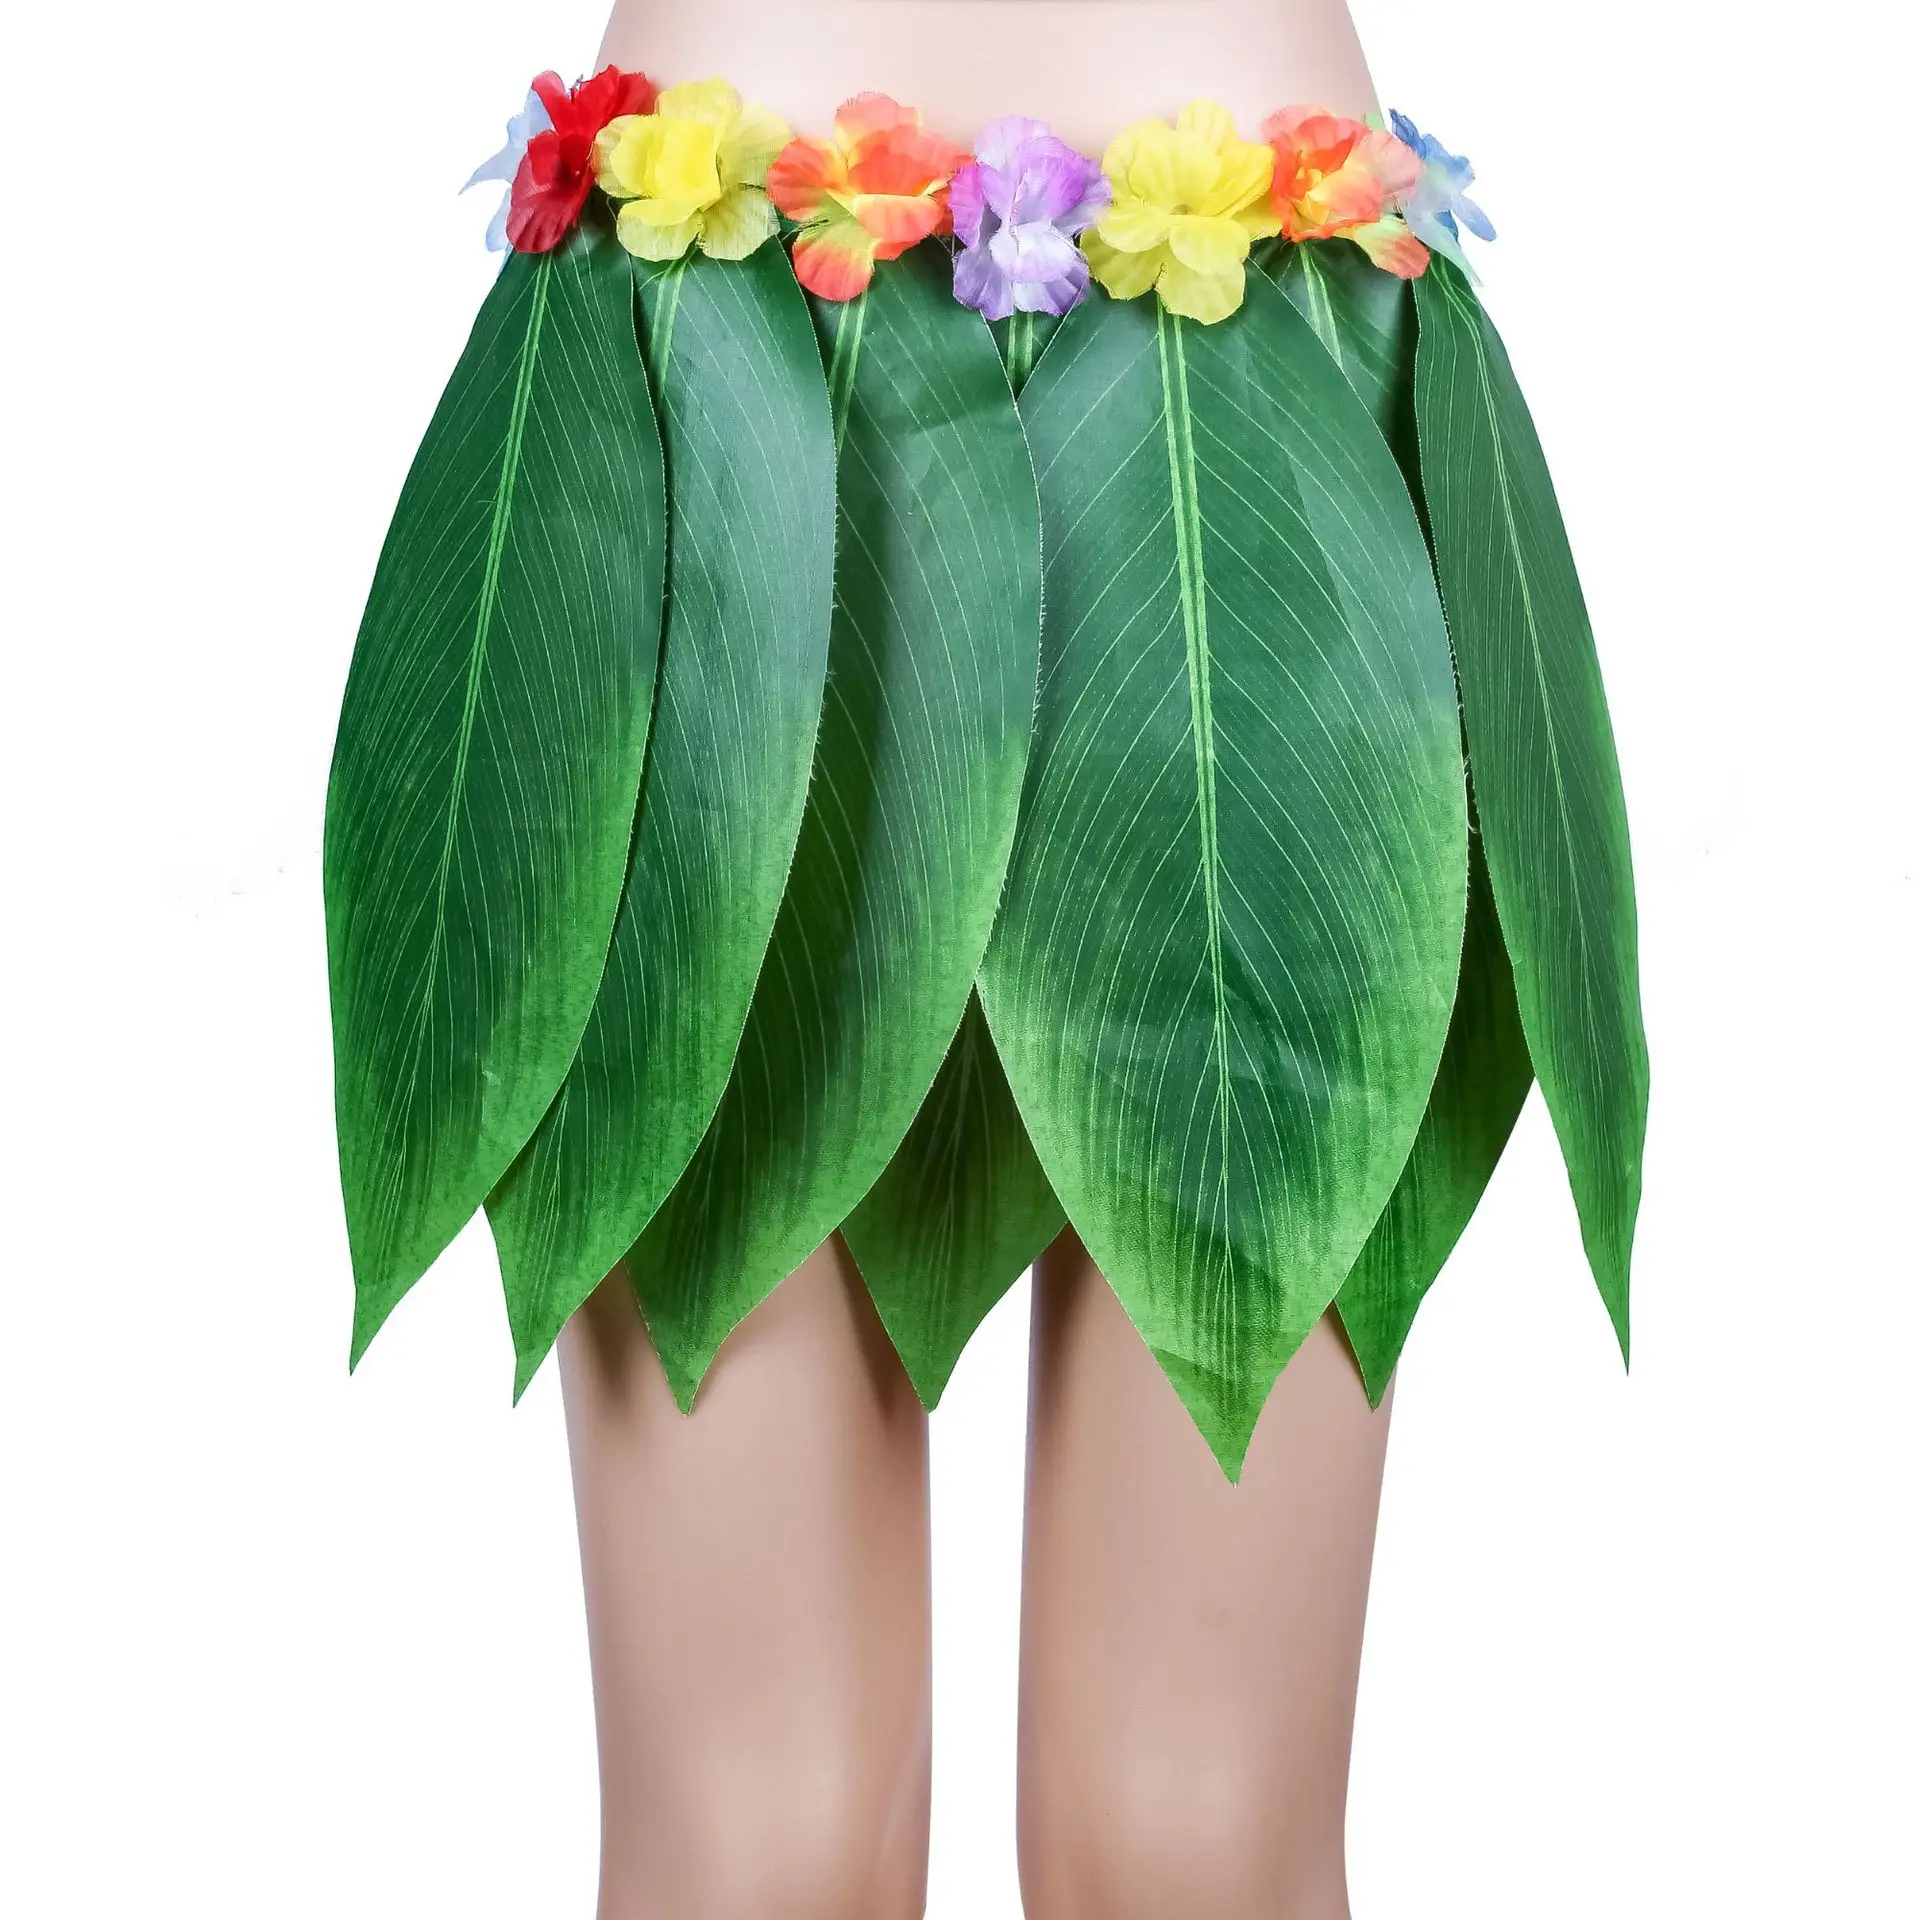 Горячая 38 см Гавайская «хула» травяная вечерние платья юбки хула пляжный танцевальный костюм горячий энтузиазм хула юбка путешествия фото реквизит